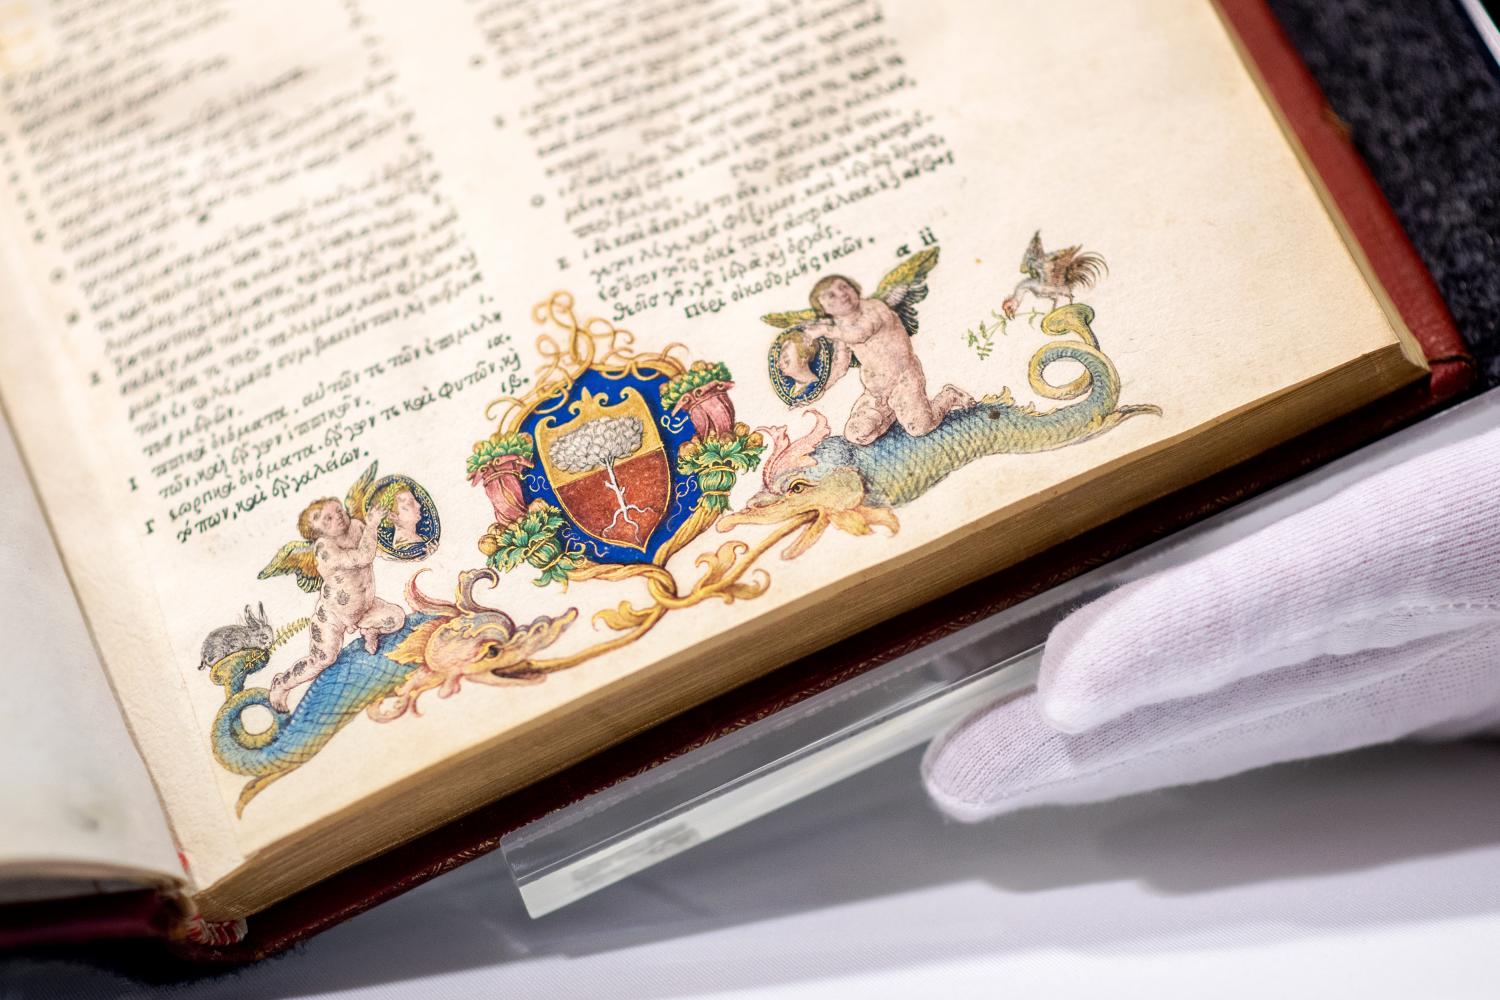 Eine bislang unbekannte Illustration, die möglicherweise von dem Renaissance-Künstler Albrecht Dürer stammt, in einem Buch, das zum Bestand der Landesbibliothek Oldenburg gehört